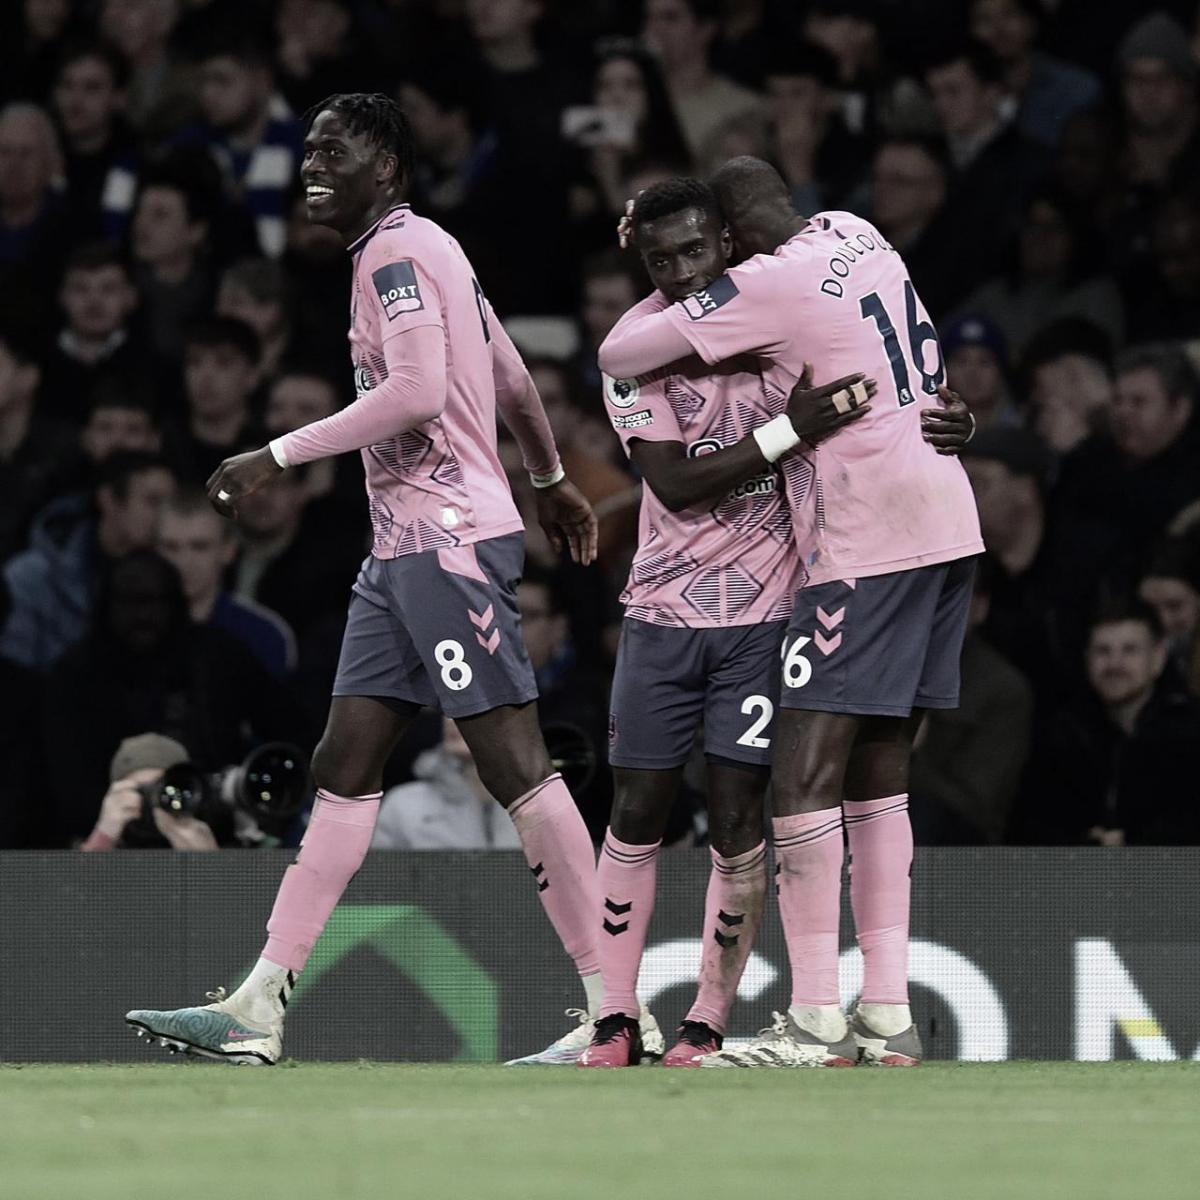 Everton empata a partida com gol no final (Foto: (Reprodução/Everton)